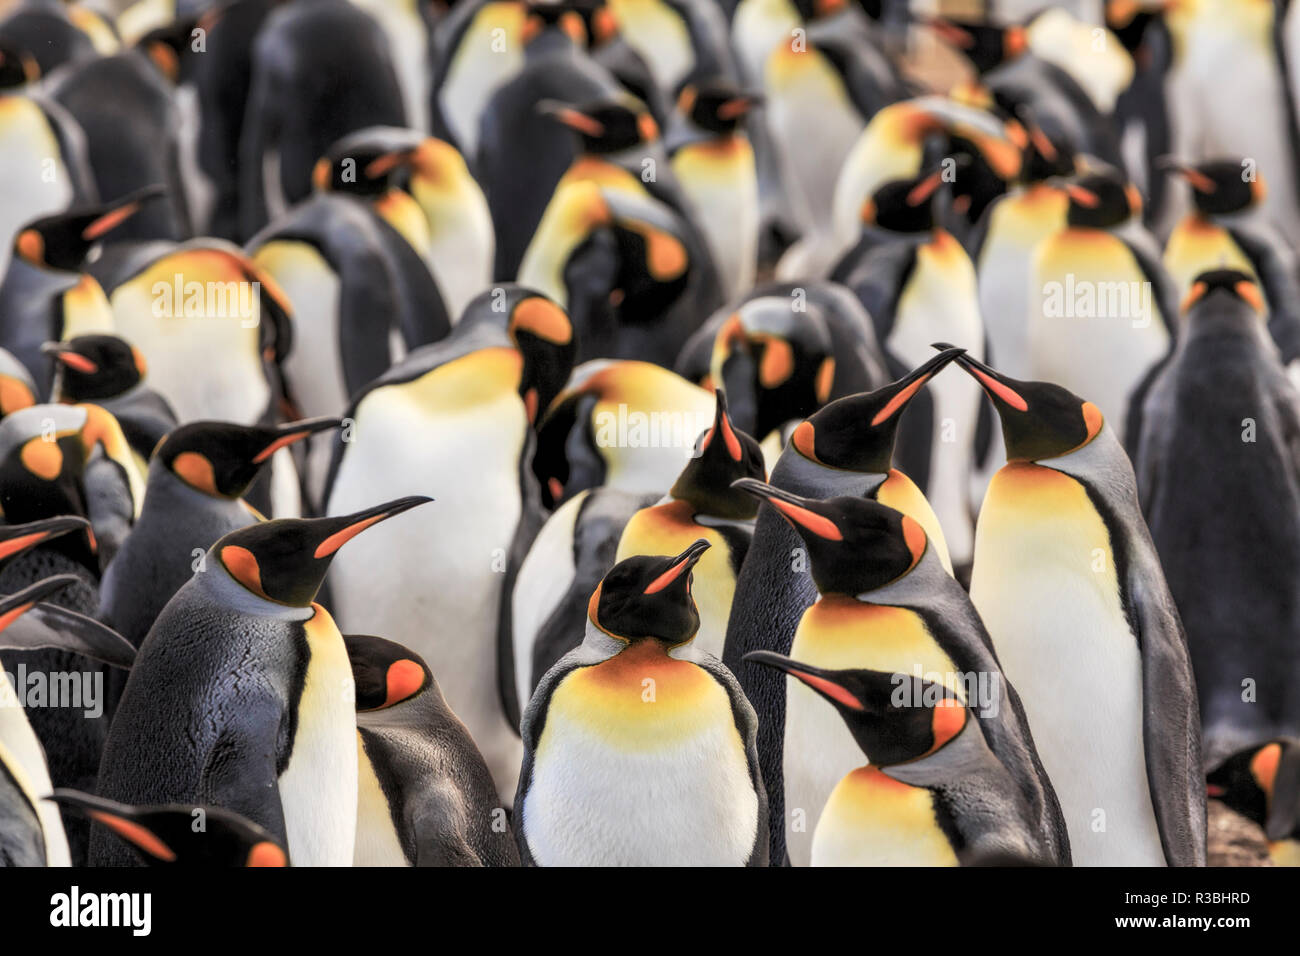 Grupo de Pingüinos rey, sobre la playa, Volunteer Point, Isla Oriental, las Islas Malvinas, Aptenodytes patagonicus Foto de stock